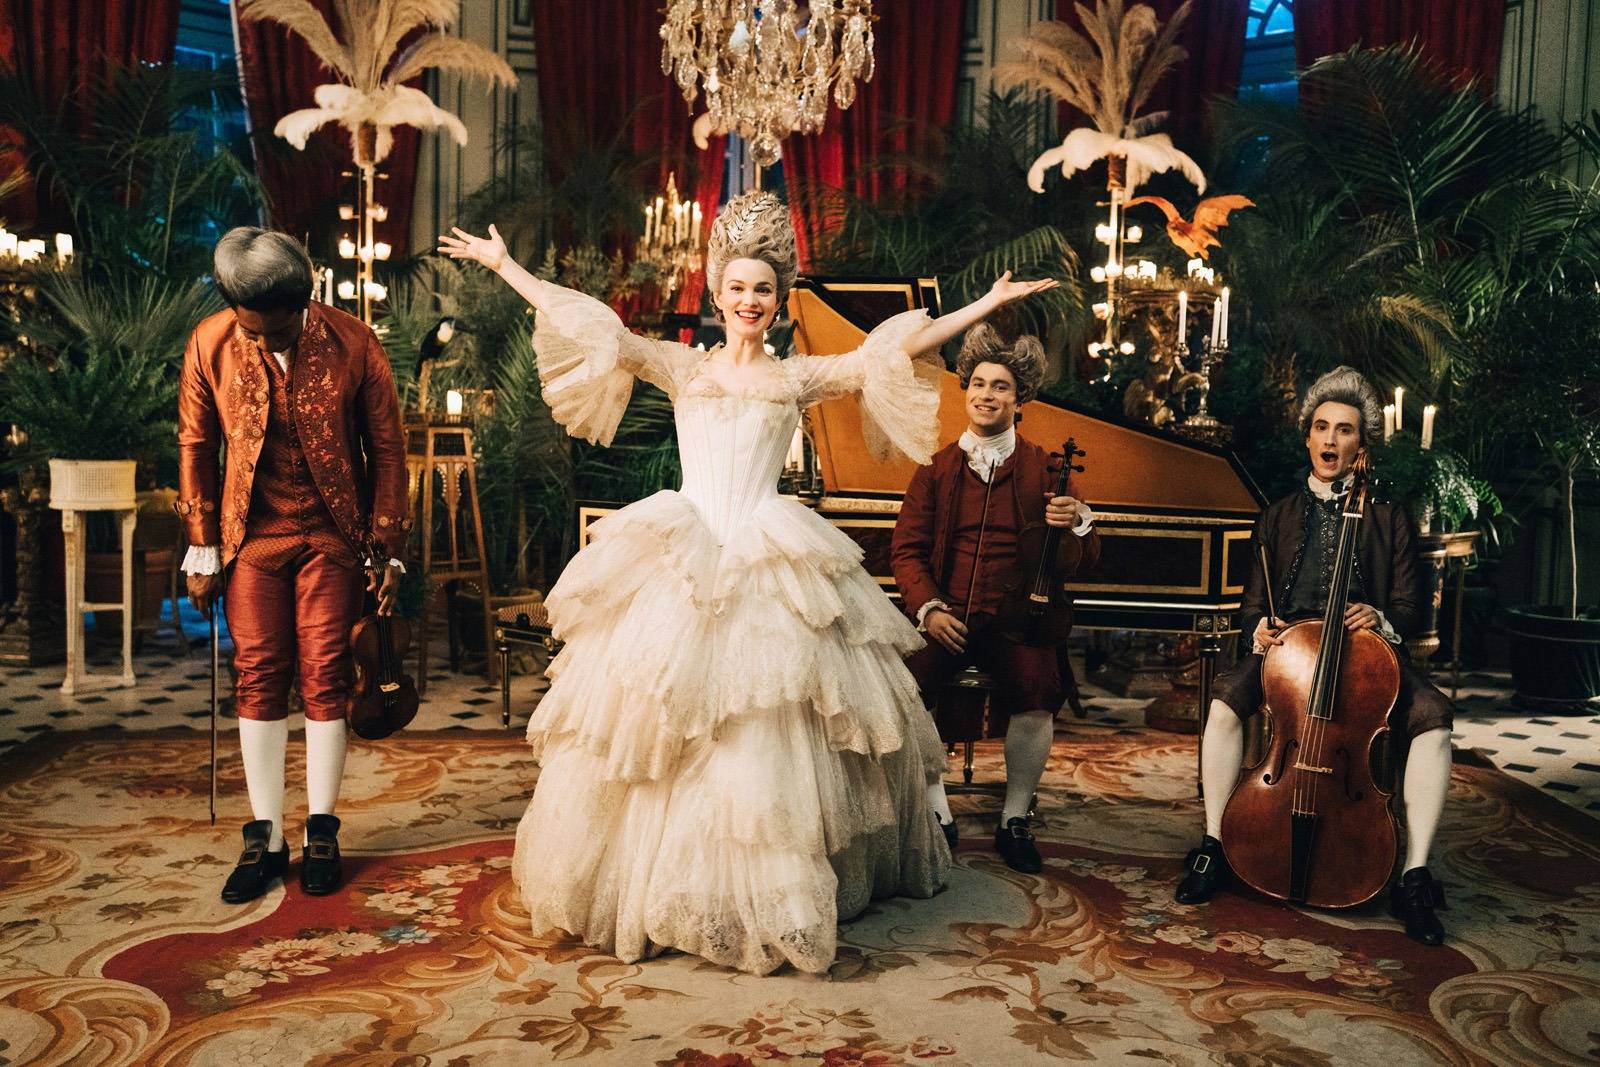 Emilia Schüle dans la série “Marie-Antoinette”. Copyright Caroline Dubois - Capa Drama / Banijay Studios France / Les Gens / Canal+